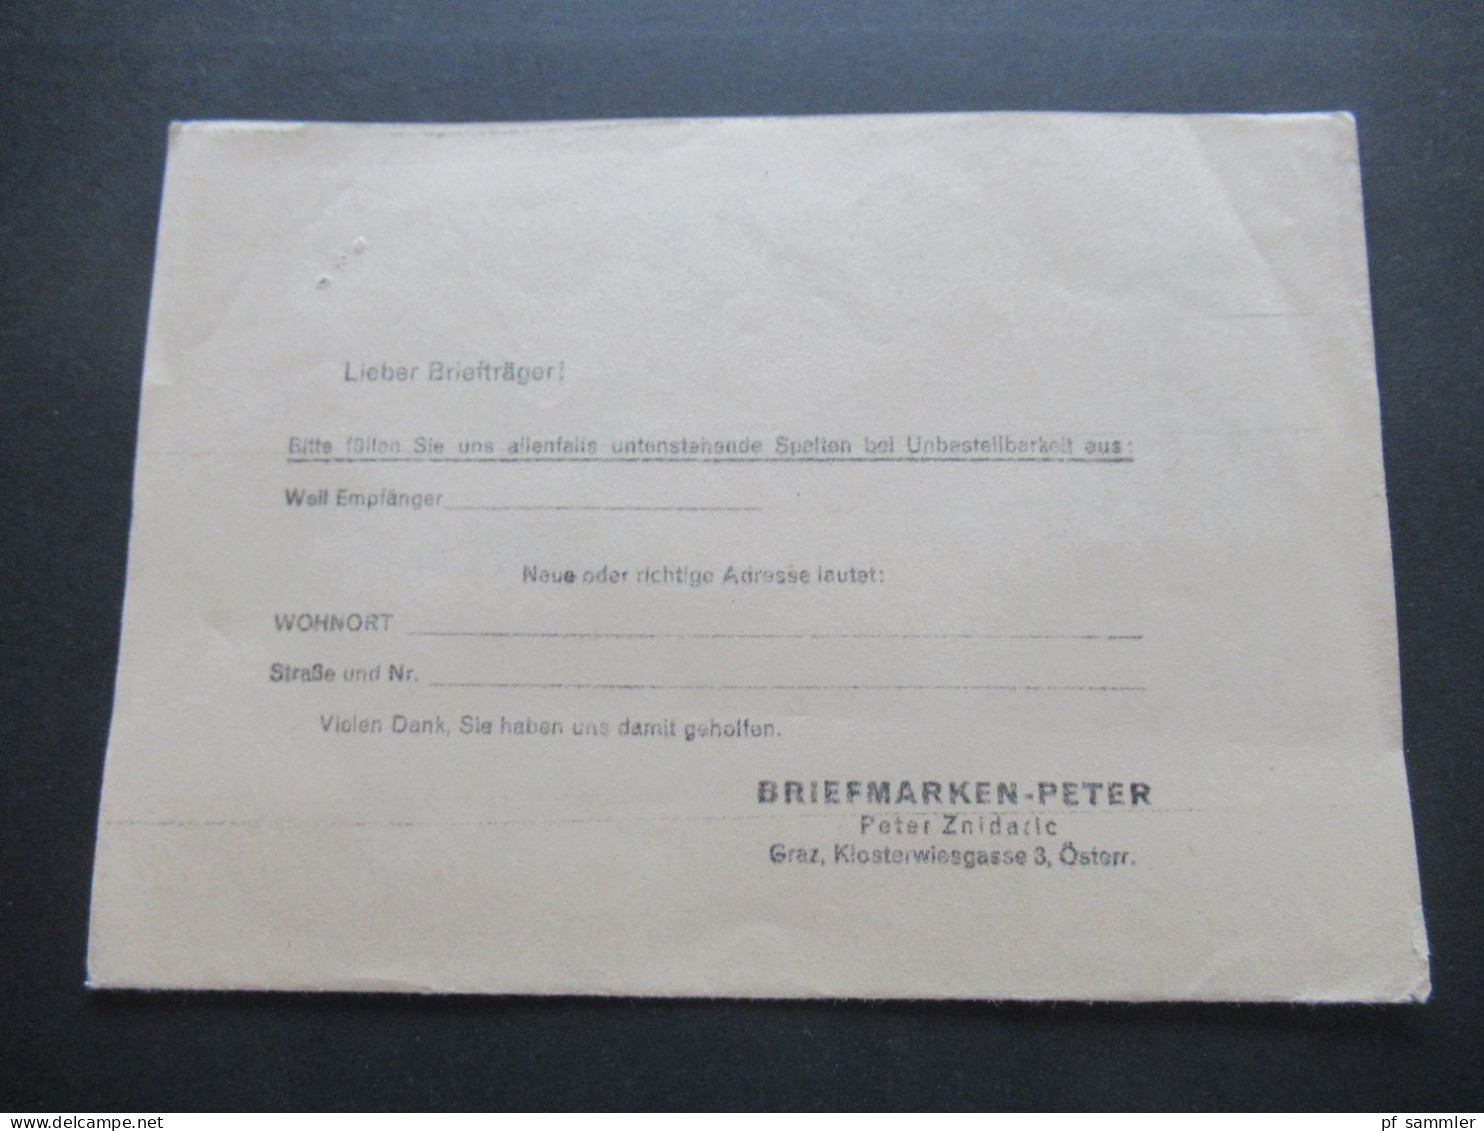 Österreich 1965 Freimarken EF Drucksache Briefmarken Peter Graz Klosterwiesgasse 4 / Austria Netto Ist Erschienen!! - Lettres & Documents